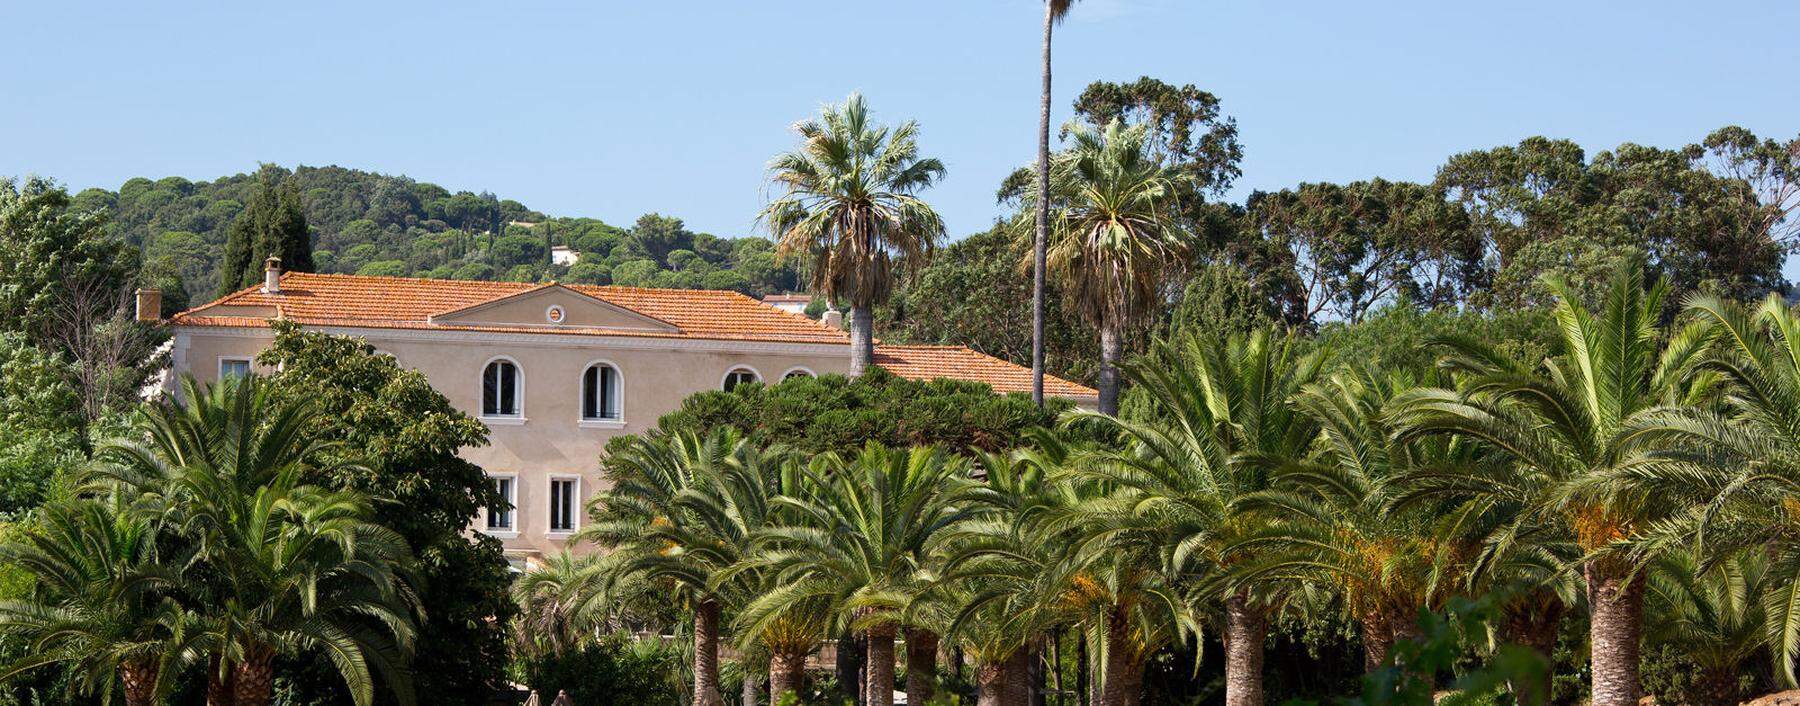 Nobel. Das Château Valmer liegt im Hinterland von St. Tropez, ganz ohne Trubel.